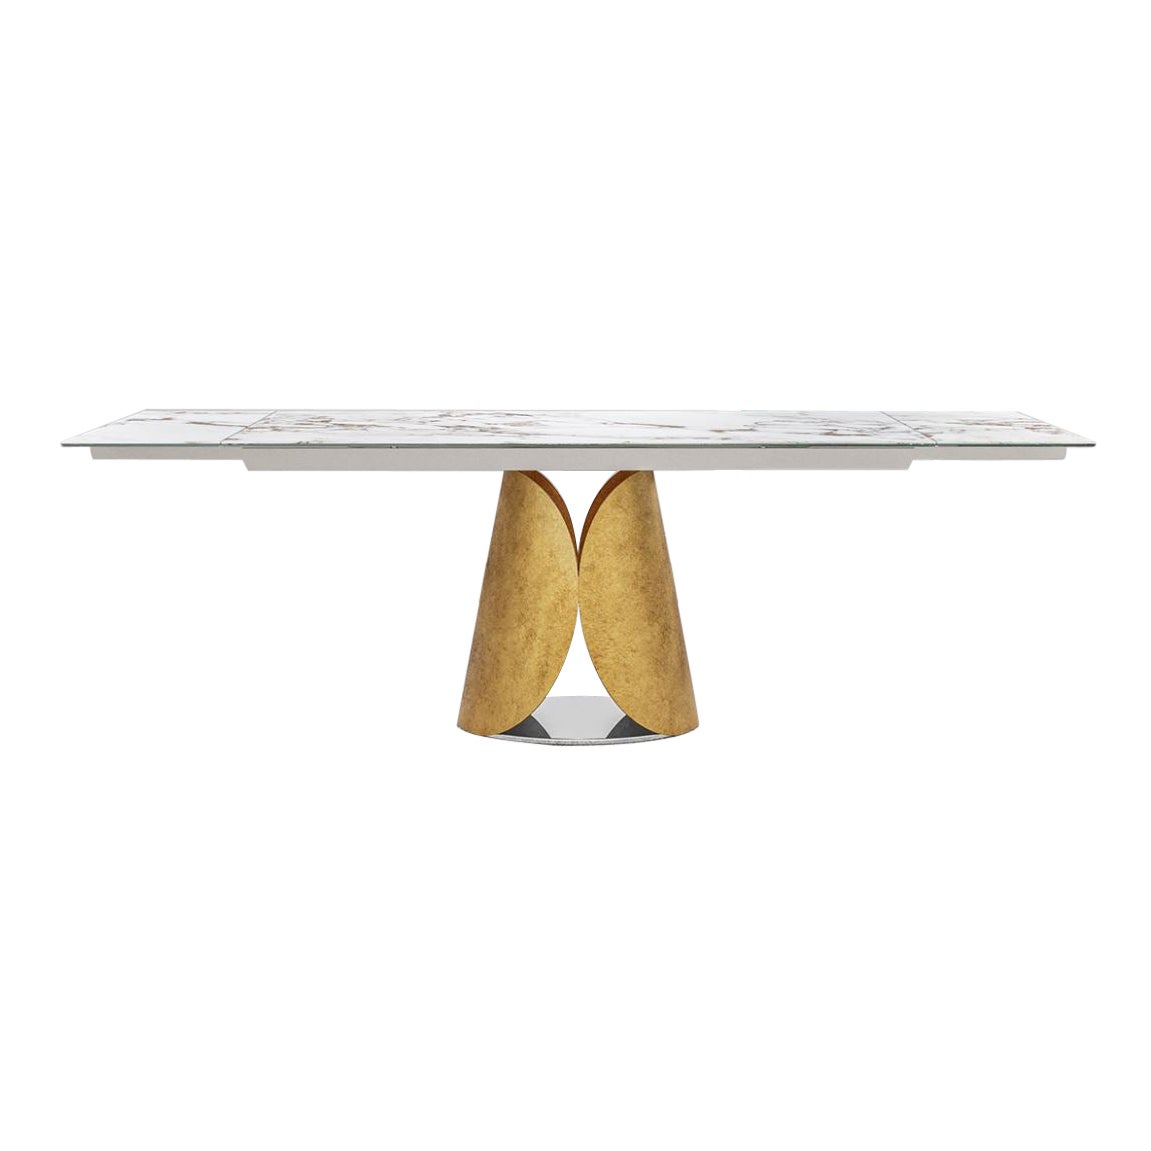 Estia Allungabile Dining Table by Chinellato Design